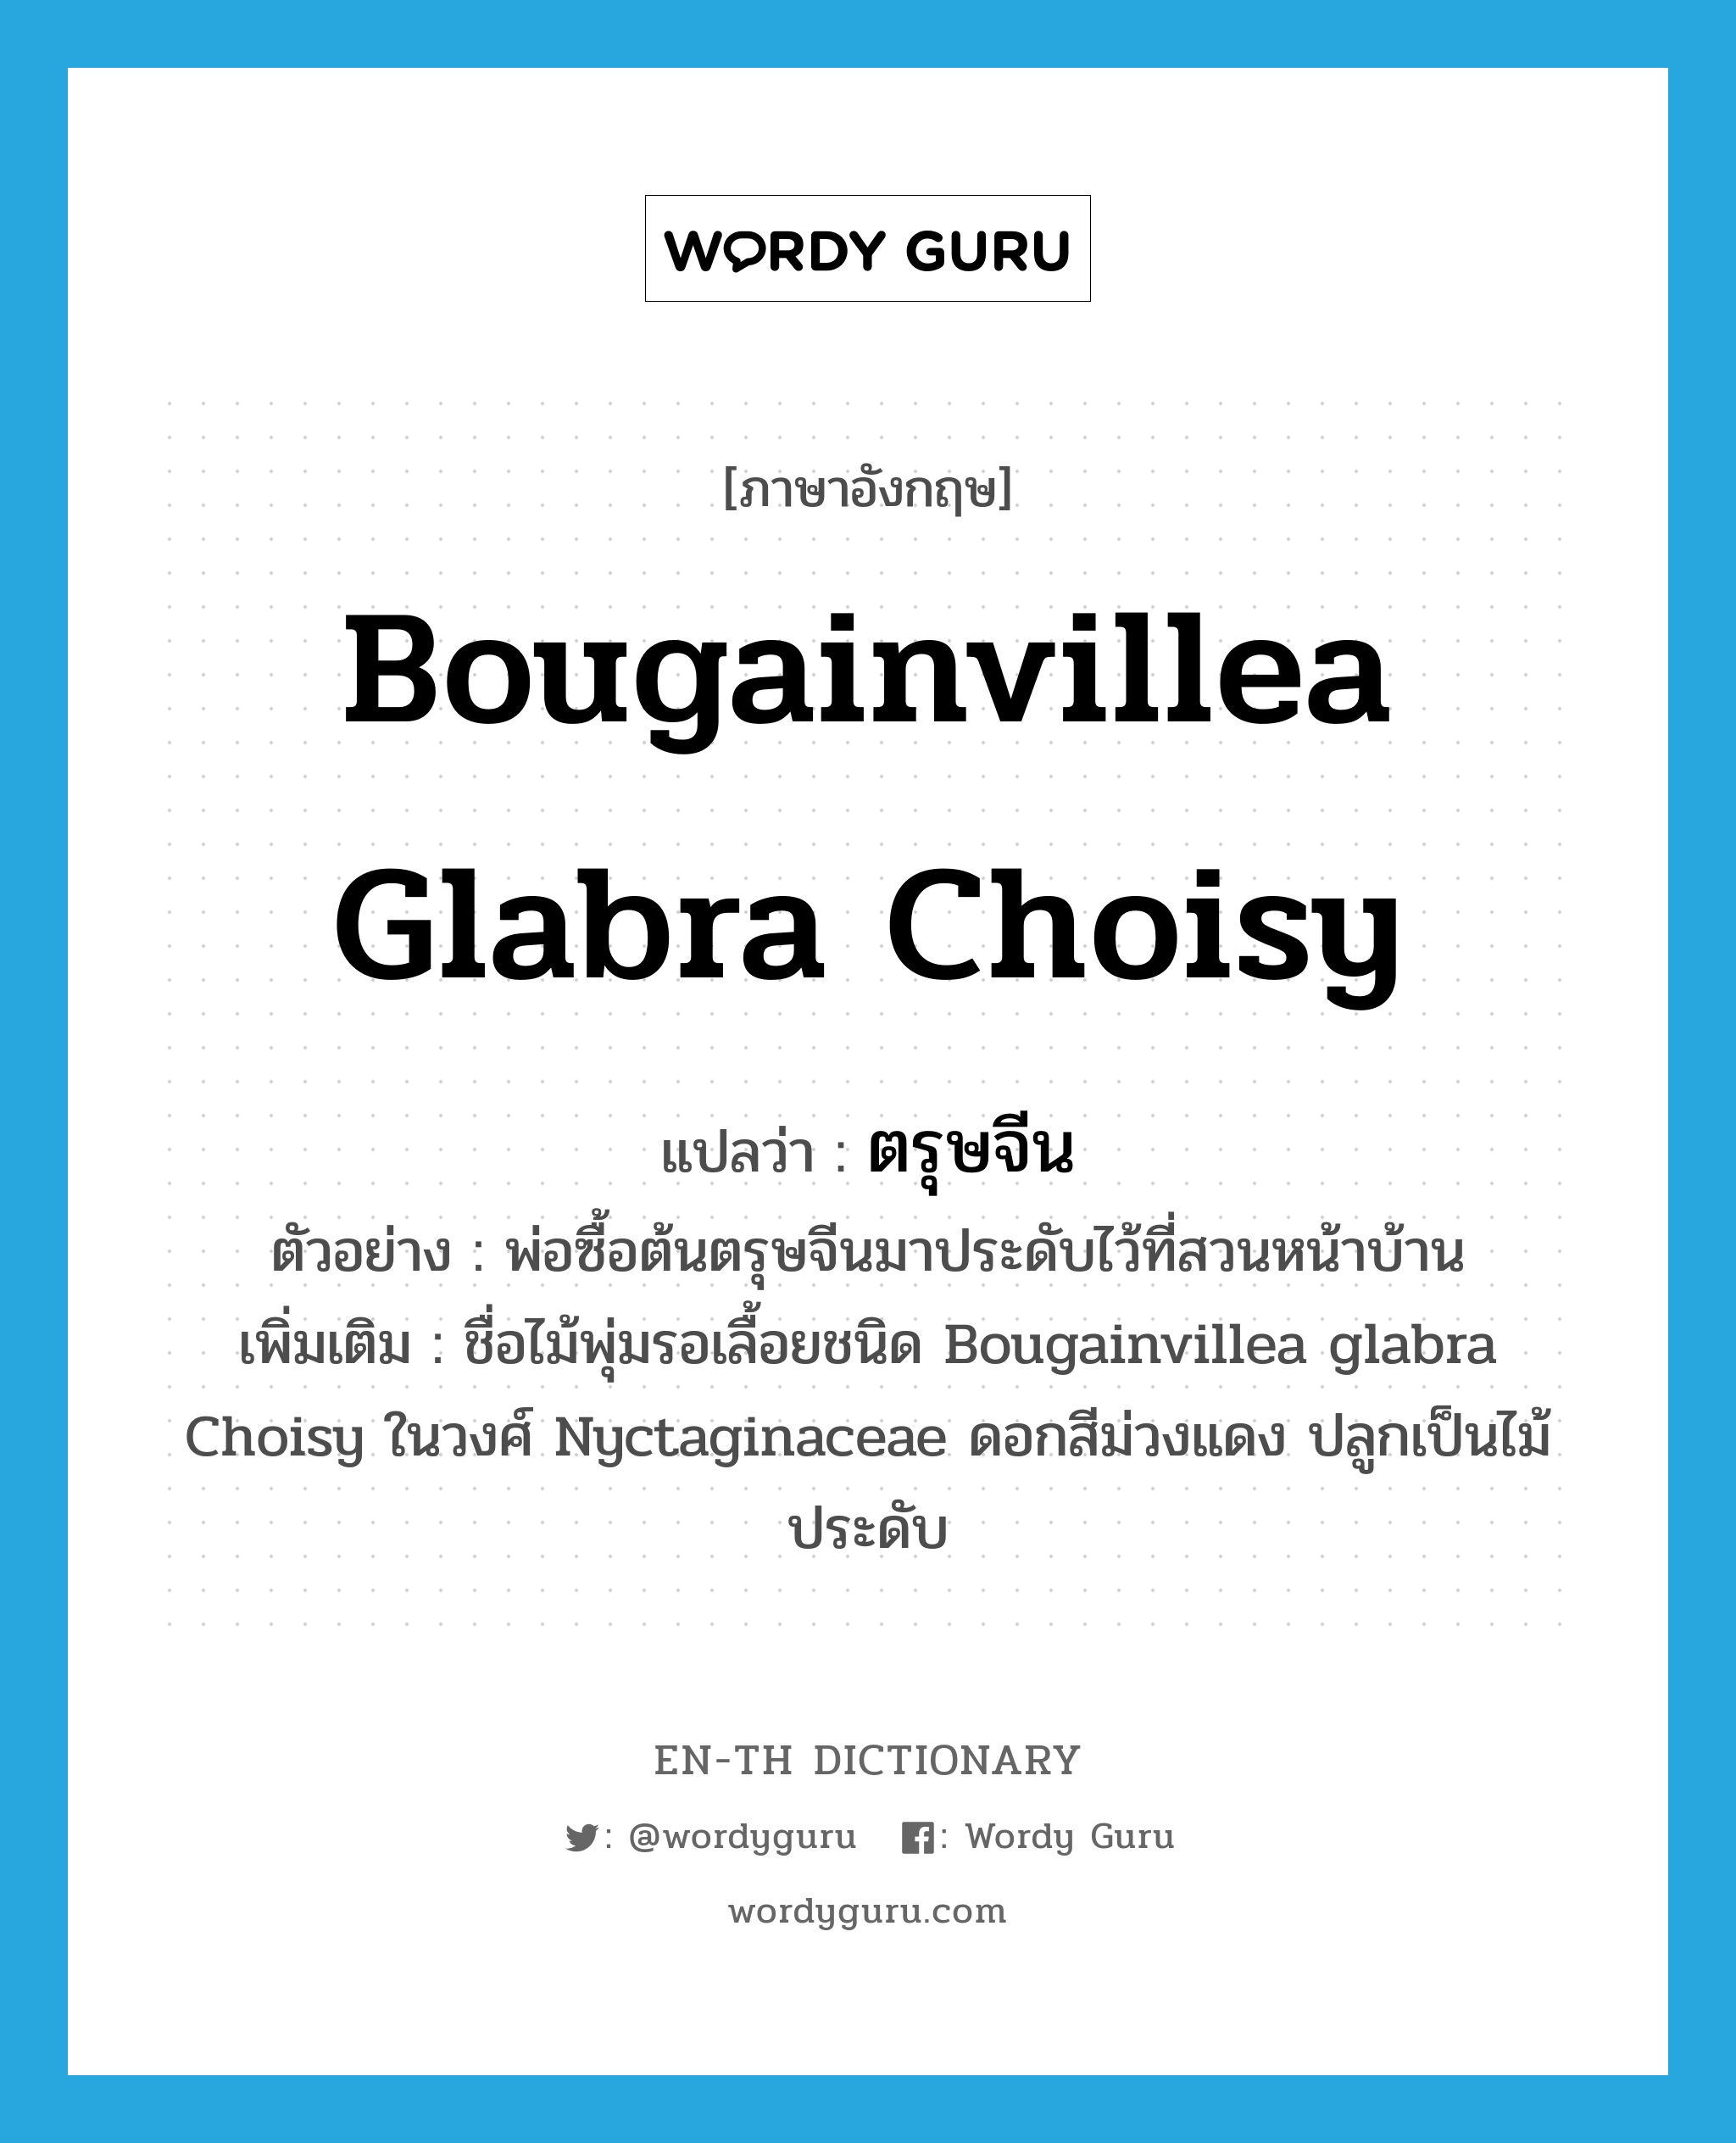 ตรุษจีน ภาษาอังกฤษ?, คำศัพท์ภาษาอังกฤษ ตรุษจีน แปลว่า Bougainvillea glabra Choisy ประเภท N ตัวอย่าง พ่อซื้อต้นตรุษจีนมาประดับไว้ที่สวนหน้าบ้าน เพิ่มเติม ชื่อไม้พุ่มรอเลื้อยชนิด Bougainvillea glabra Choisy ในวงศ์ Nyctaginaceae ดอกสีม่วงแดง ปลูกเป็นไม้ประดับ หมวด N